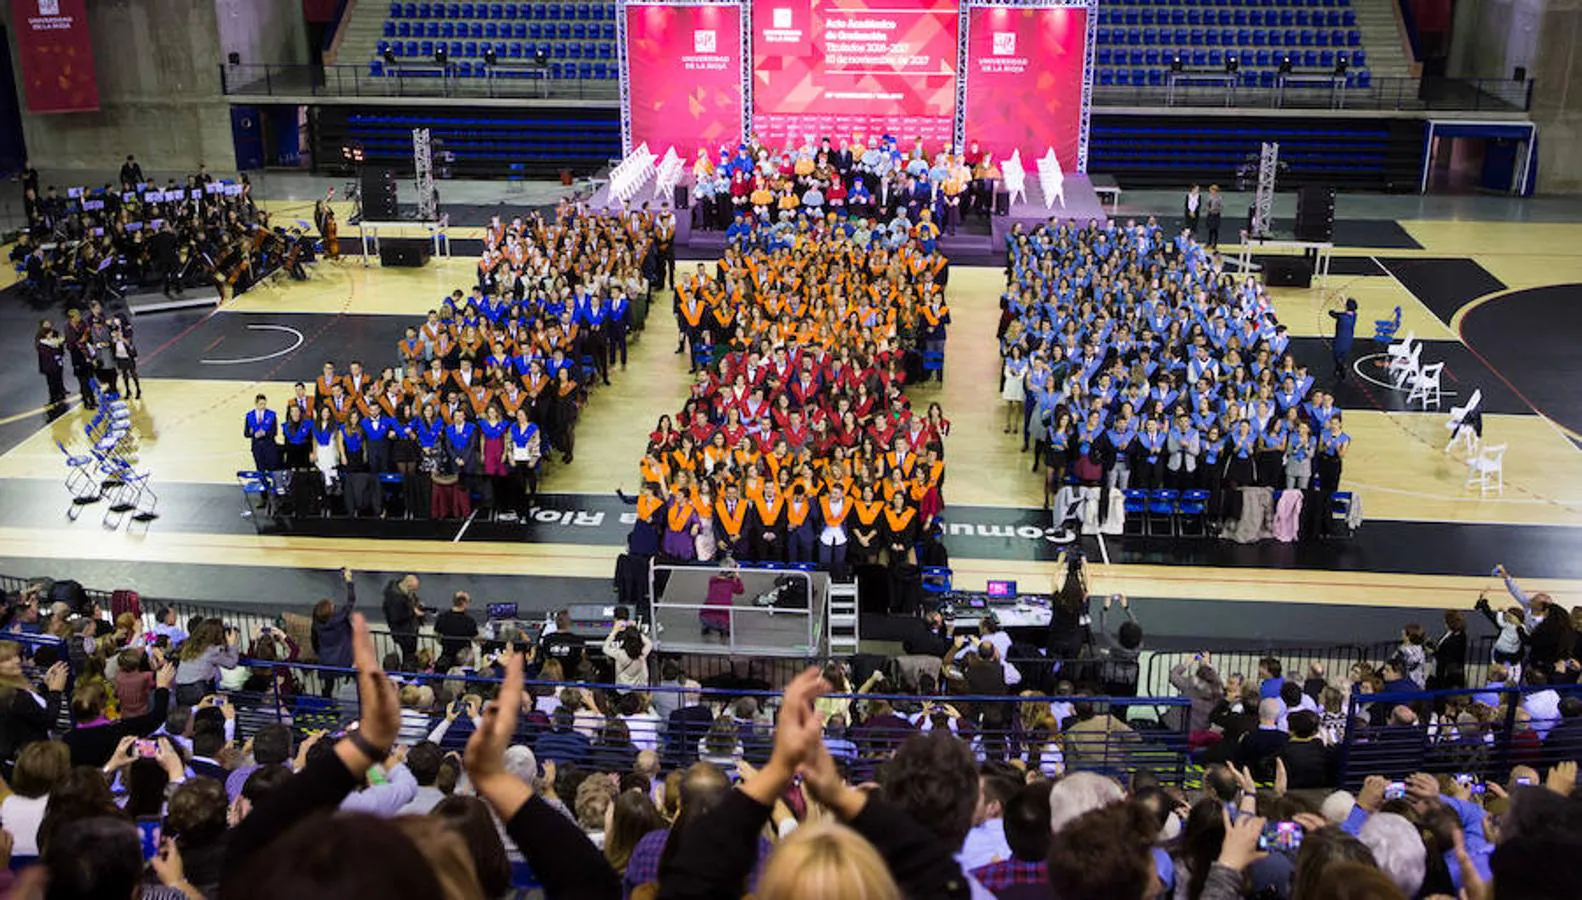 Medio millar de estudiantes de la Universidad de La Rioja celebró el viernes una multitudinaria graduación que coincidió con el 25 aniversario de la institución de enseñanza y que se celebró en el Palacio de los Deportes